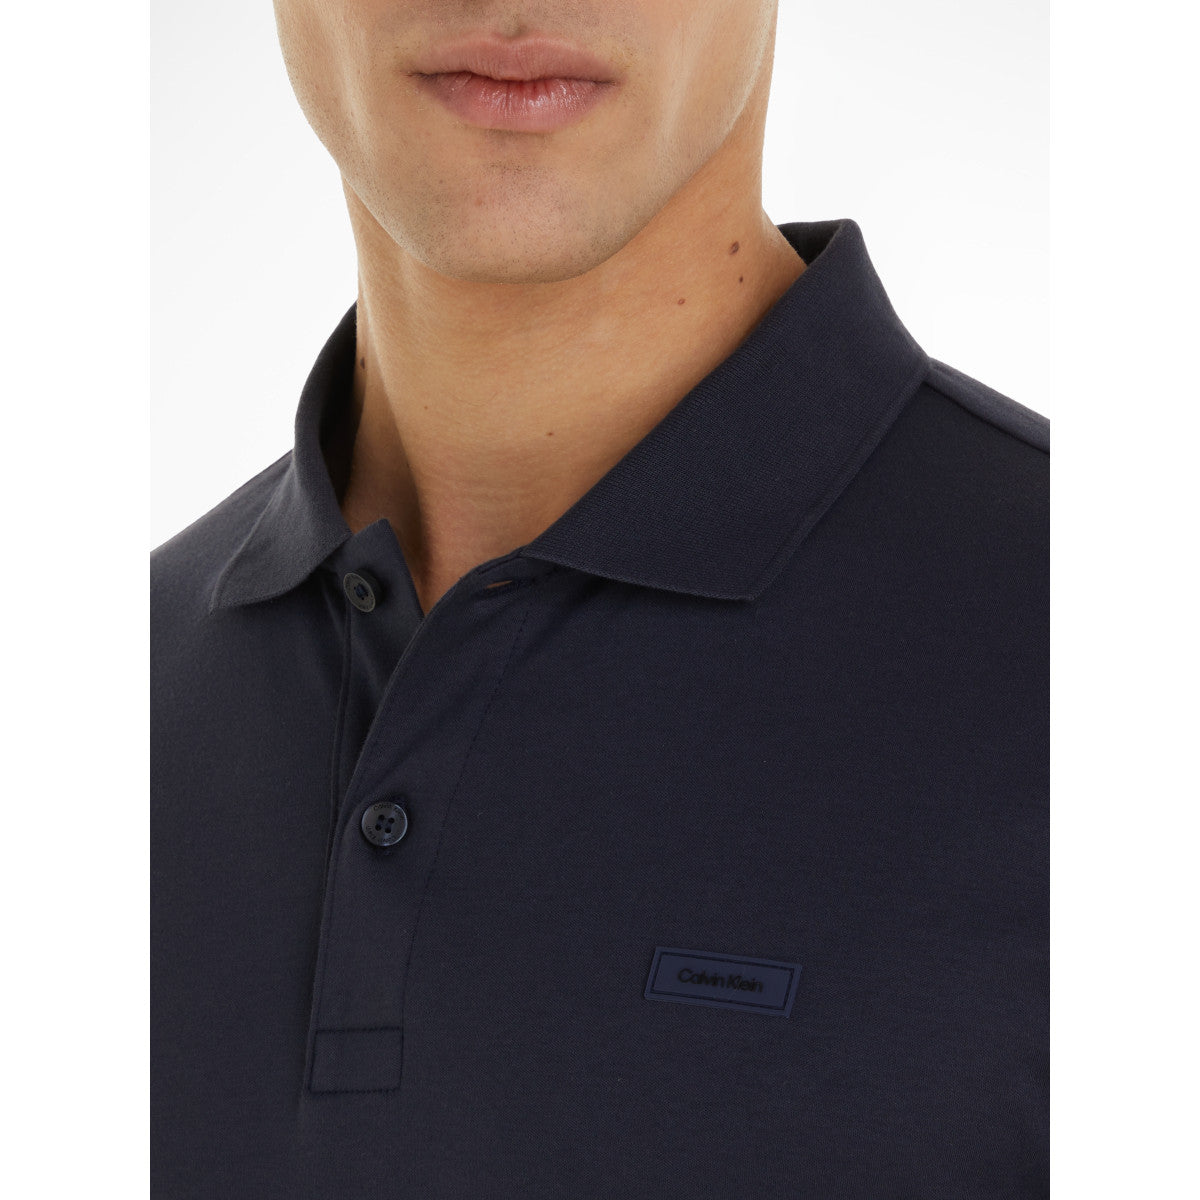 Calvin Klein Slim Fit Polo Shirt CHW Blue